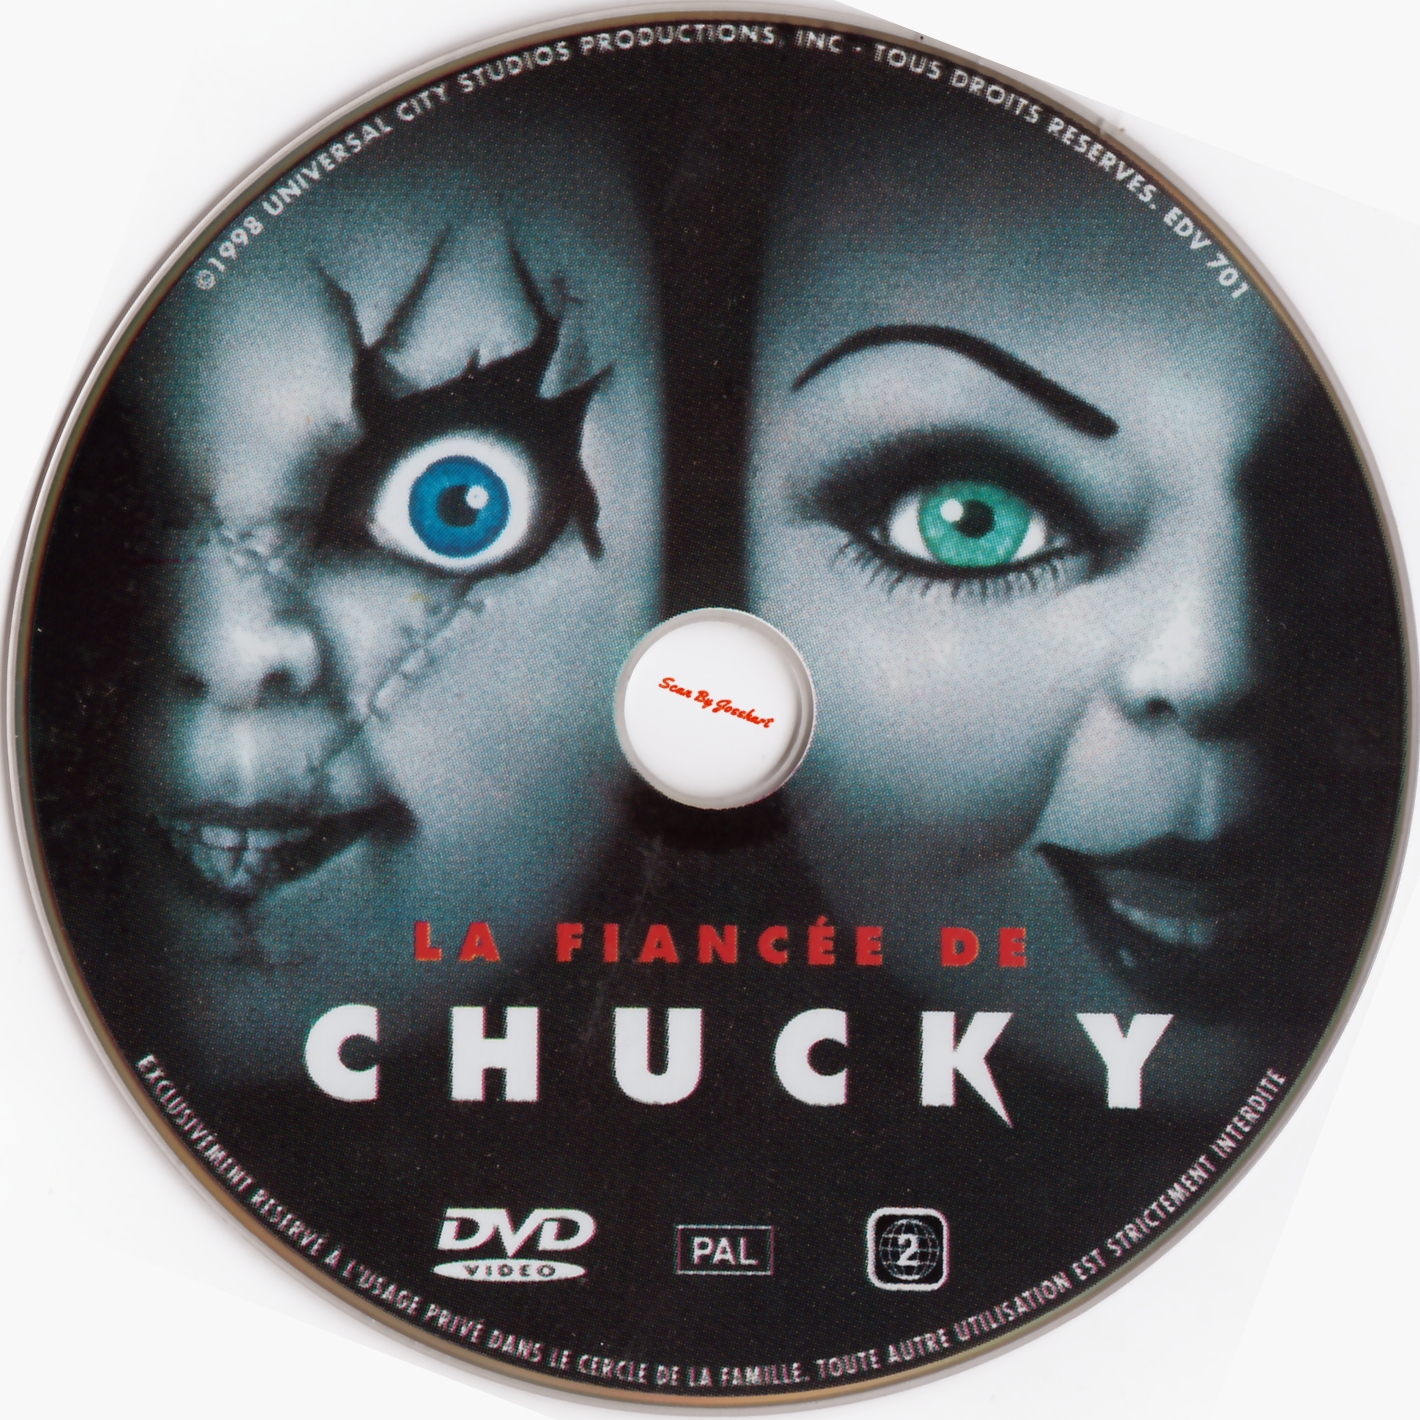 Chucky 4 La fiance de Chucky